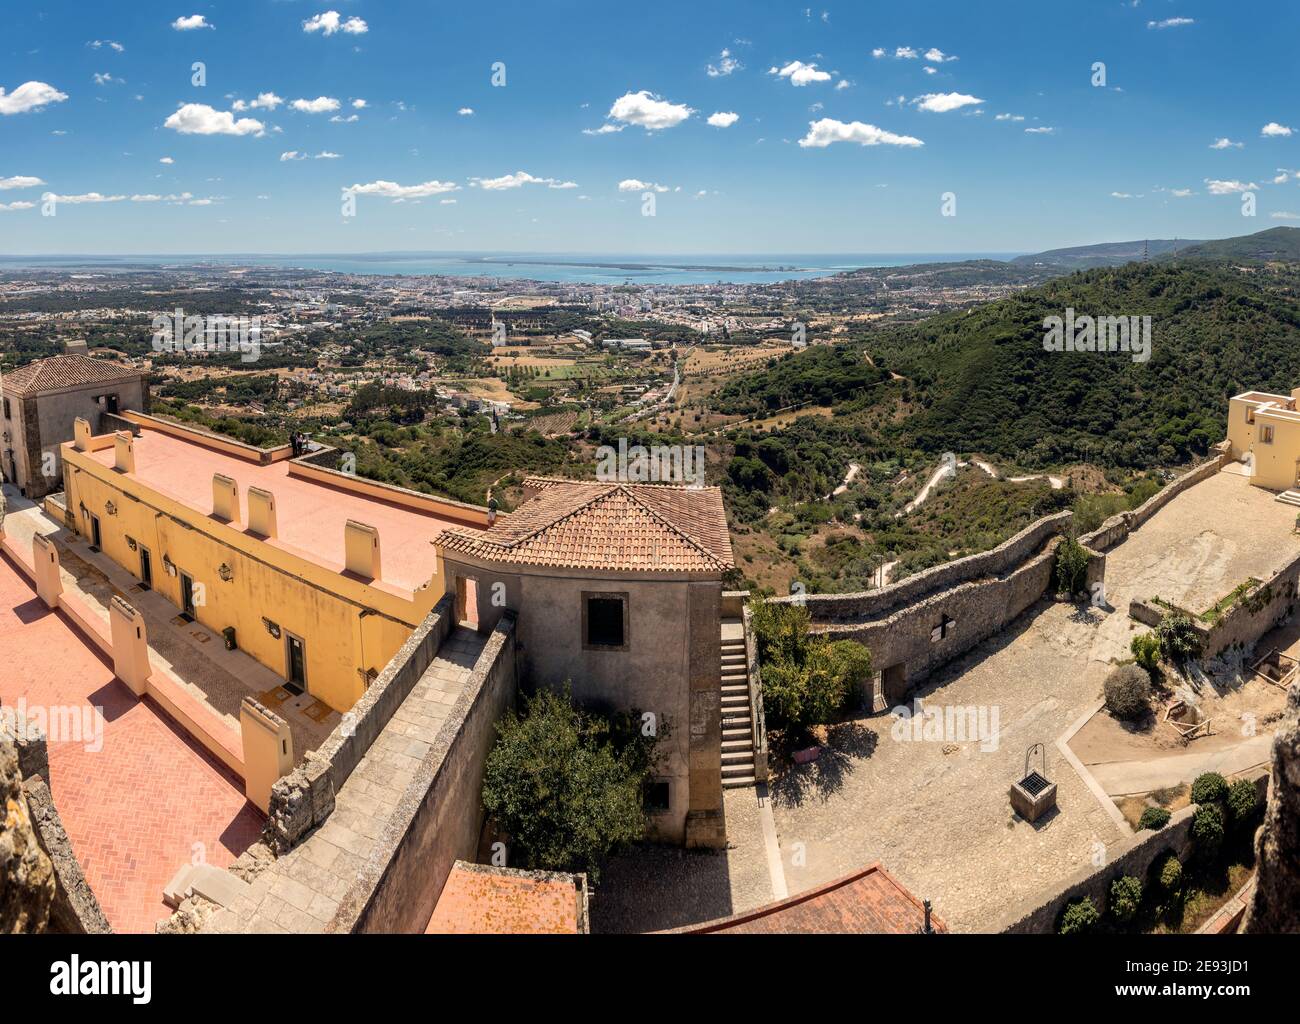 Vue panoramique sur le château de Palmela, au Portugal, avec la ville de Setúbal, le fleuve Sado, et la péninsule de Toria en arrière-plan. Banque D'Images